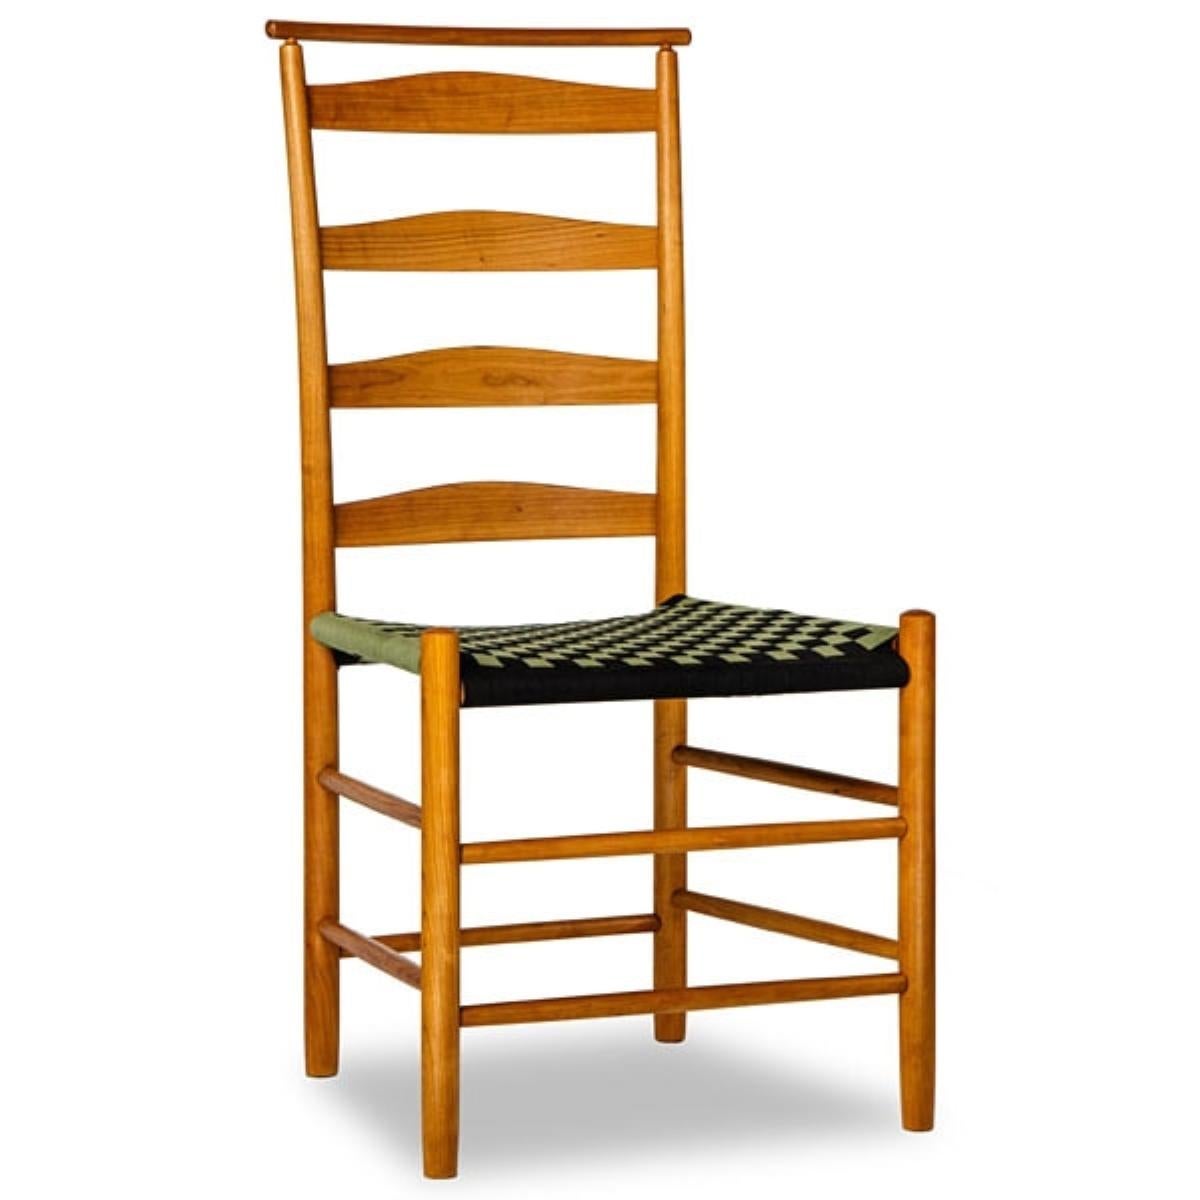 Au cours du XIXe siècle, les Shakers ont apporté de nombreuses améliorations à leurs chaises, tant au niveau du design que des proportions, car ils étaient convaincus que les choses les plus simples sont les plus belles. L'un des avantages d'acheter